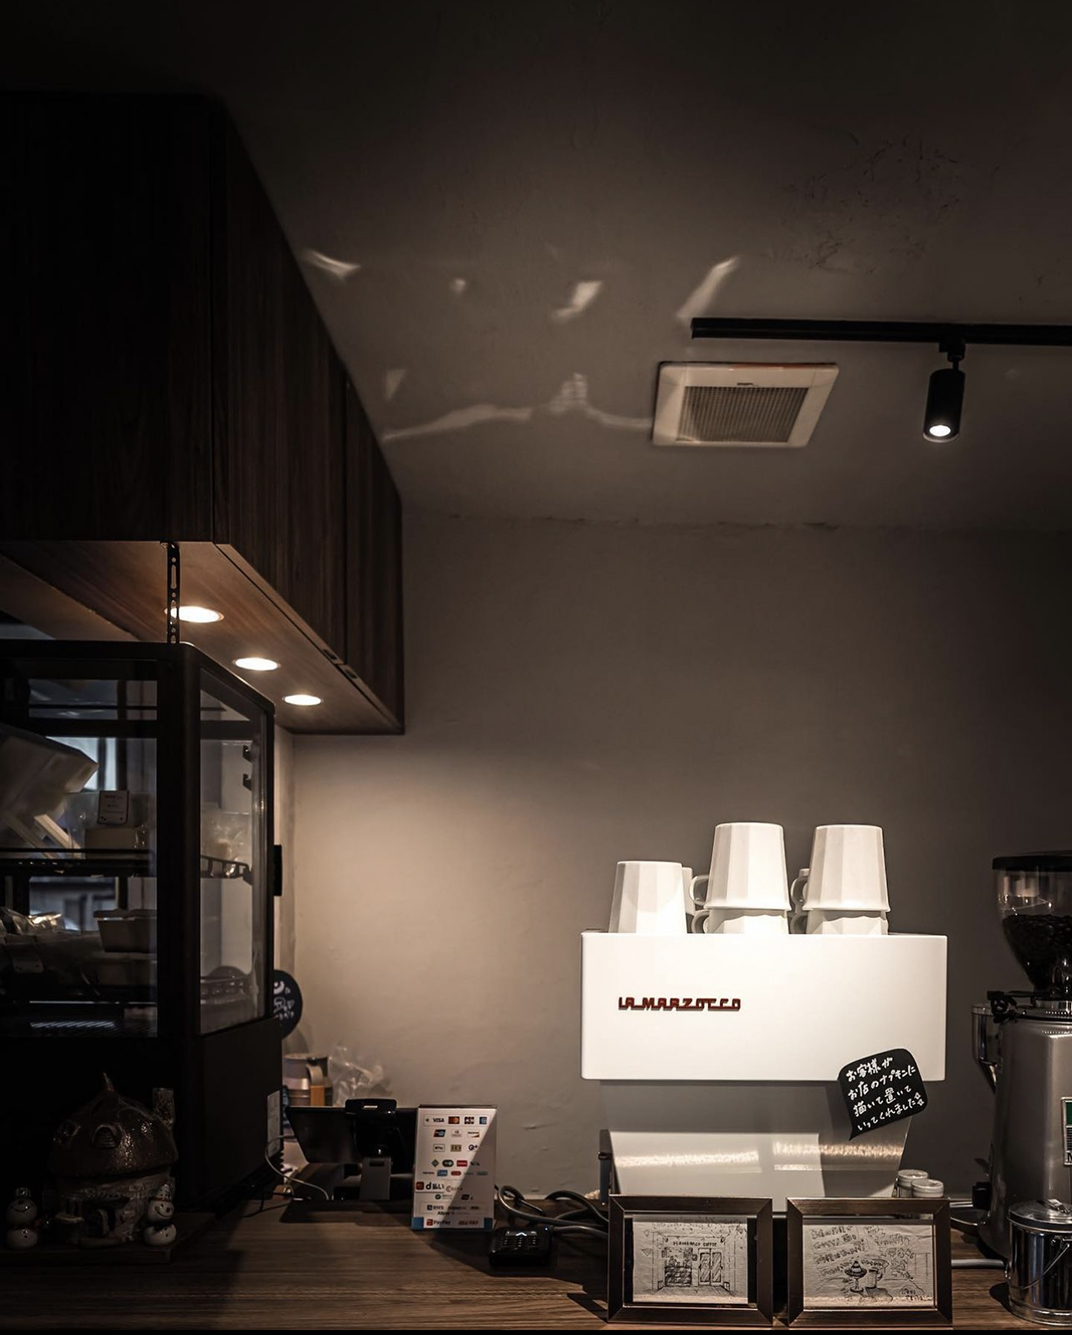 好像烟草店的咖啡店MAMEBACO COFFEE 日本 北京 上海 成都 武汉 杭州 广州 logo设计 vi设计 空间设计